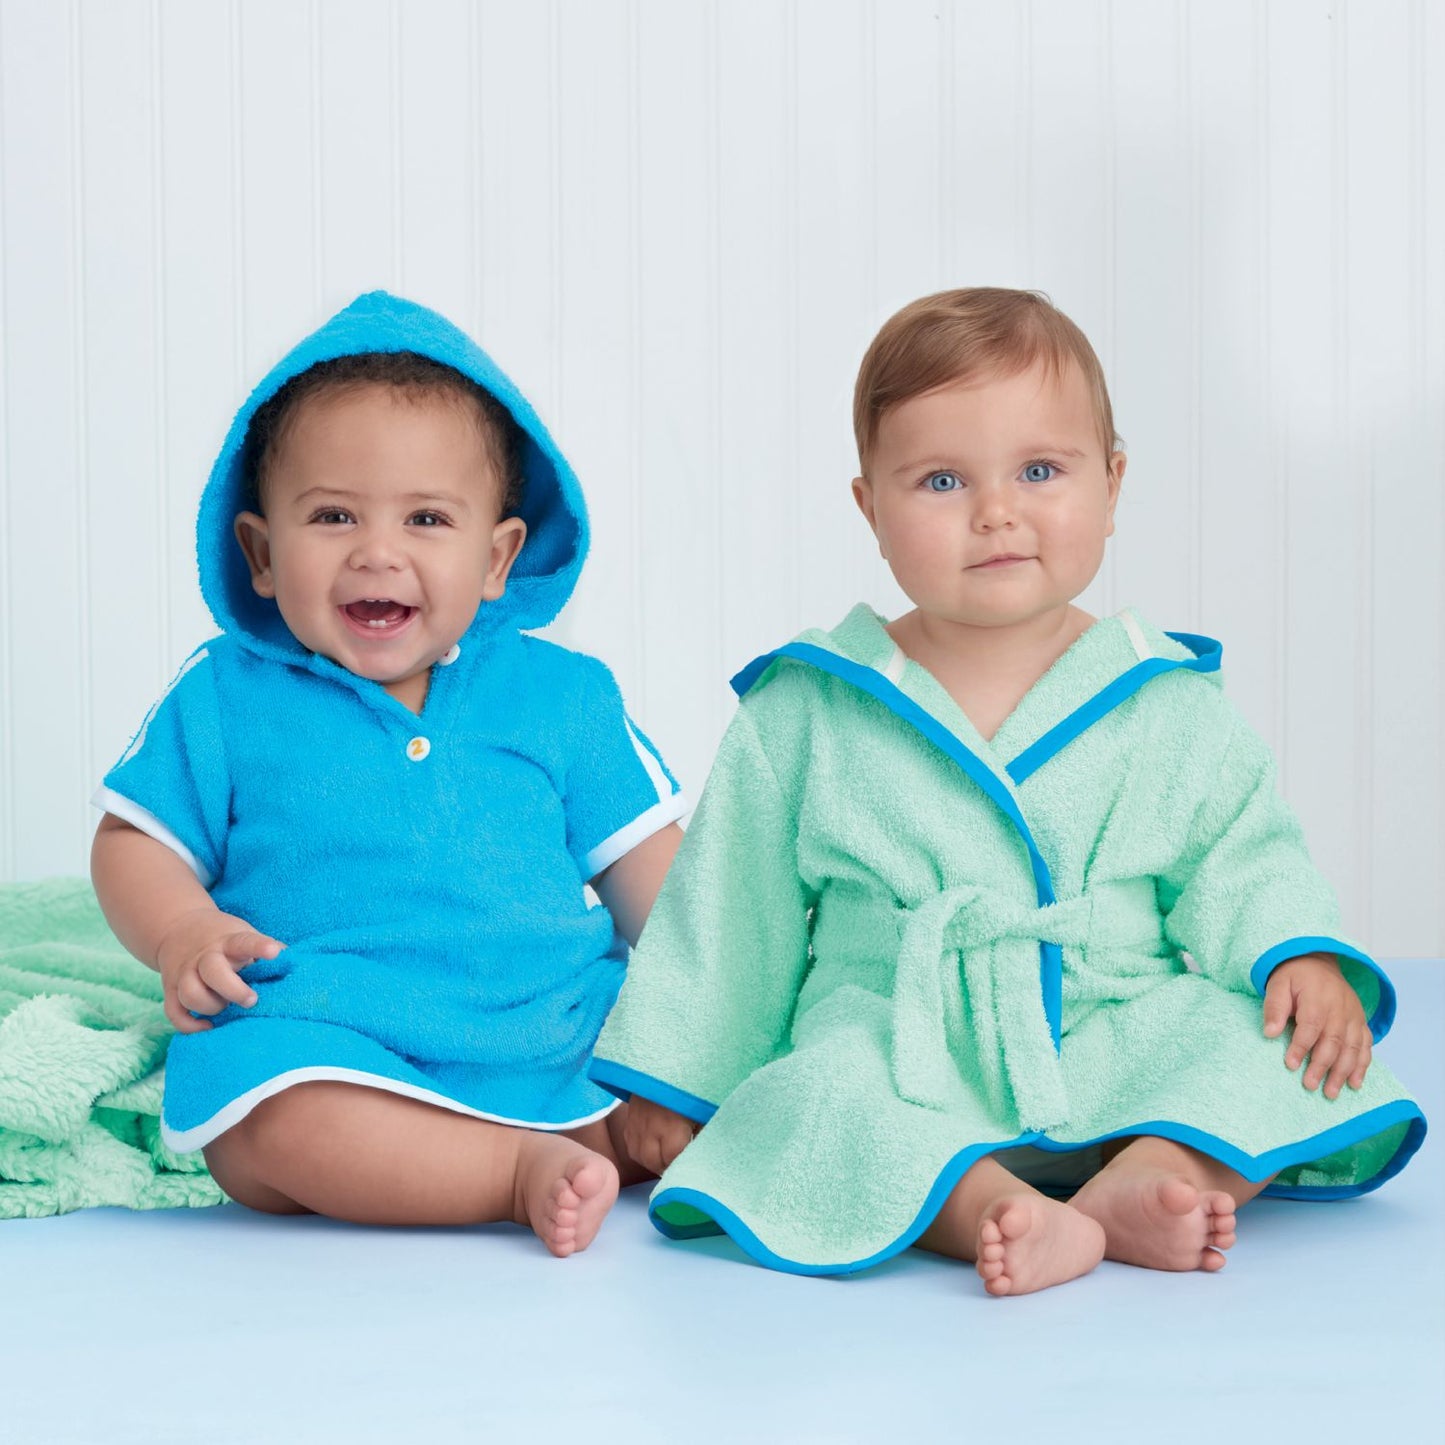 Symönster Simplicity 9483 - Badkläder Pyjamas - Baby | Bild 1